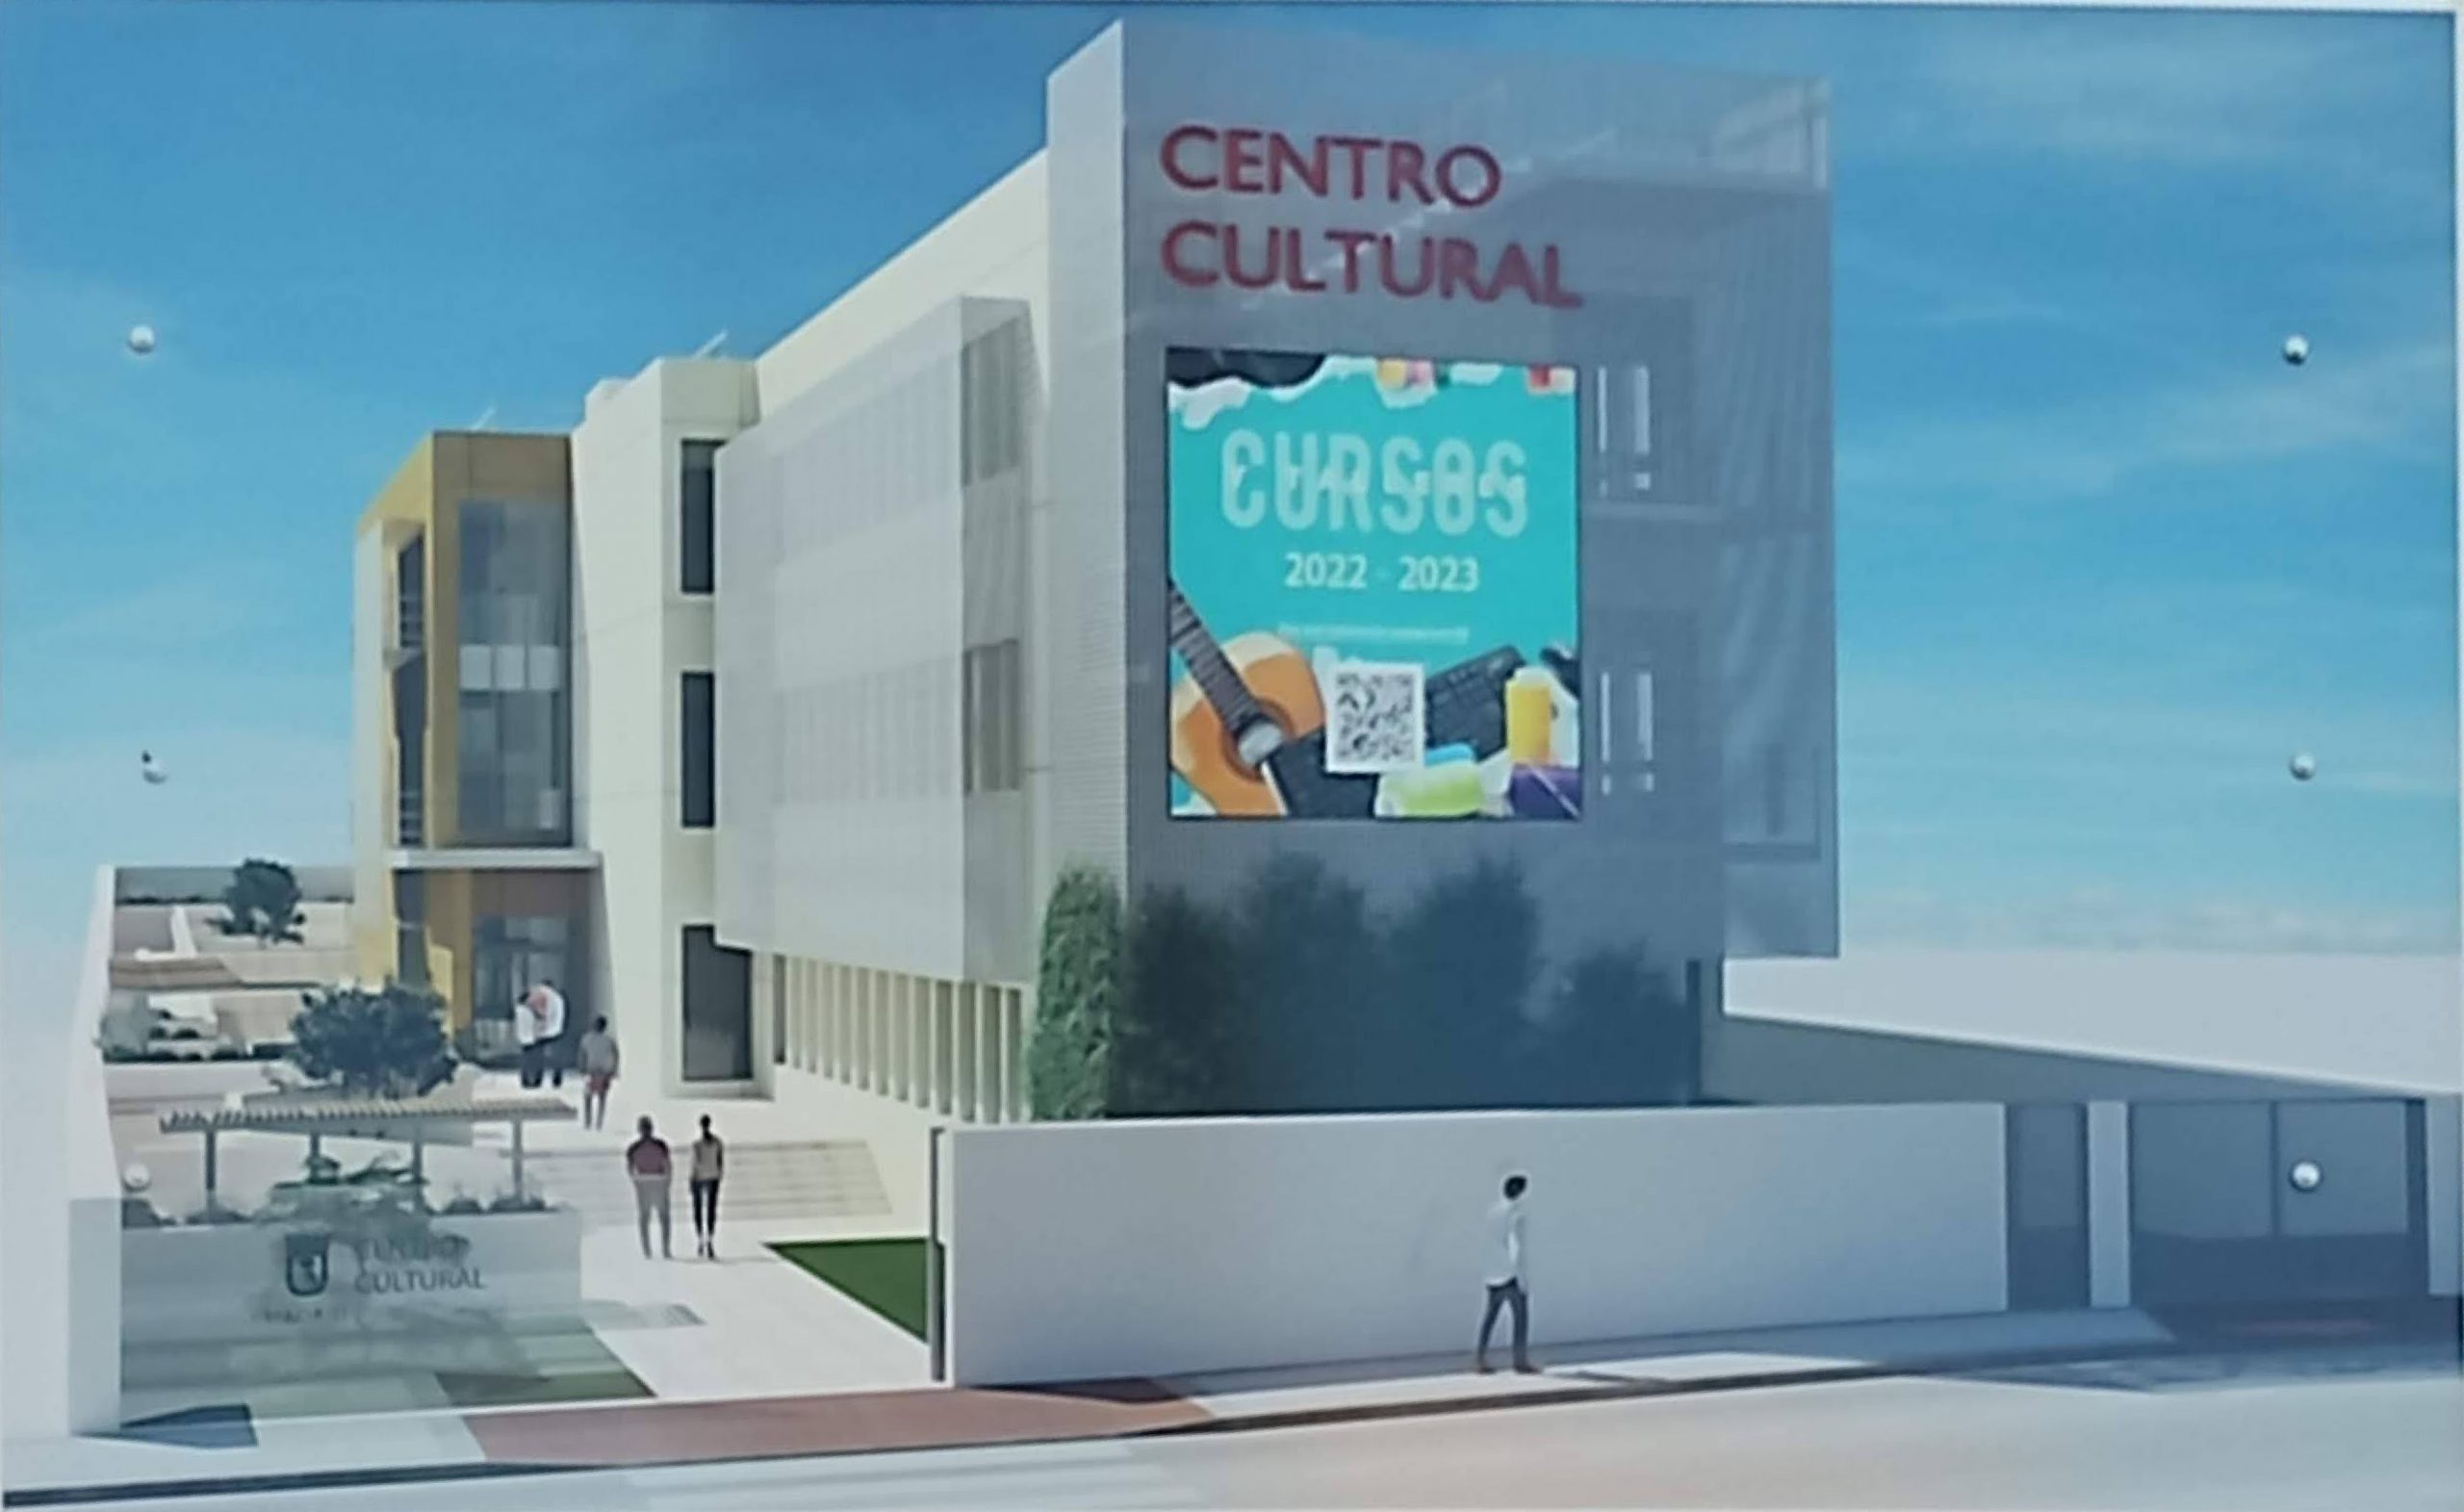 Centro Cultural – Calle Pastora Imperio, Madrid